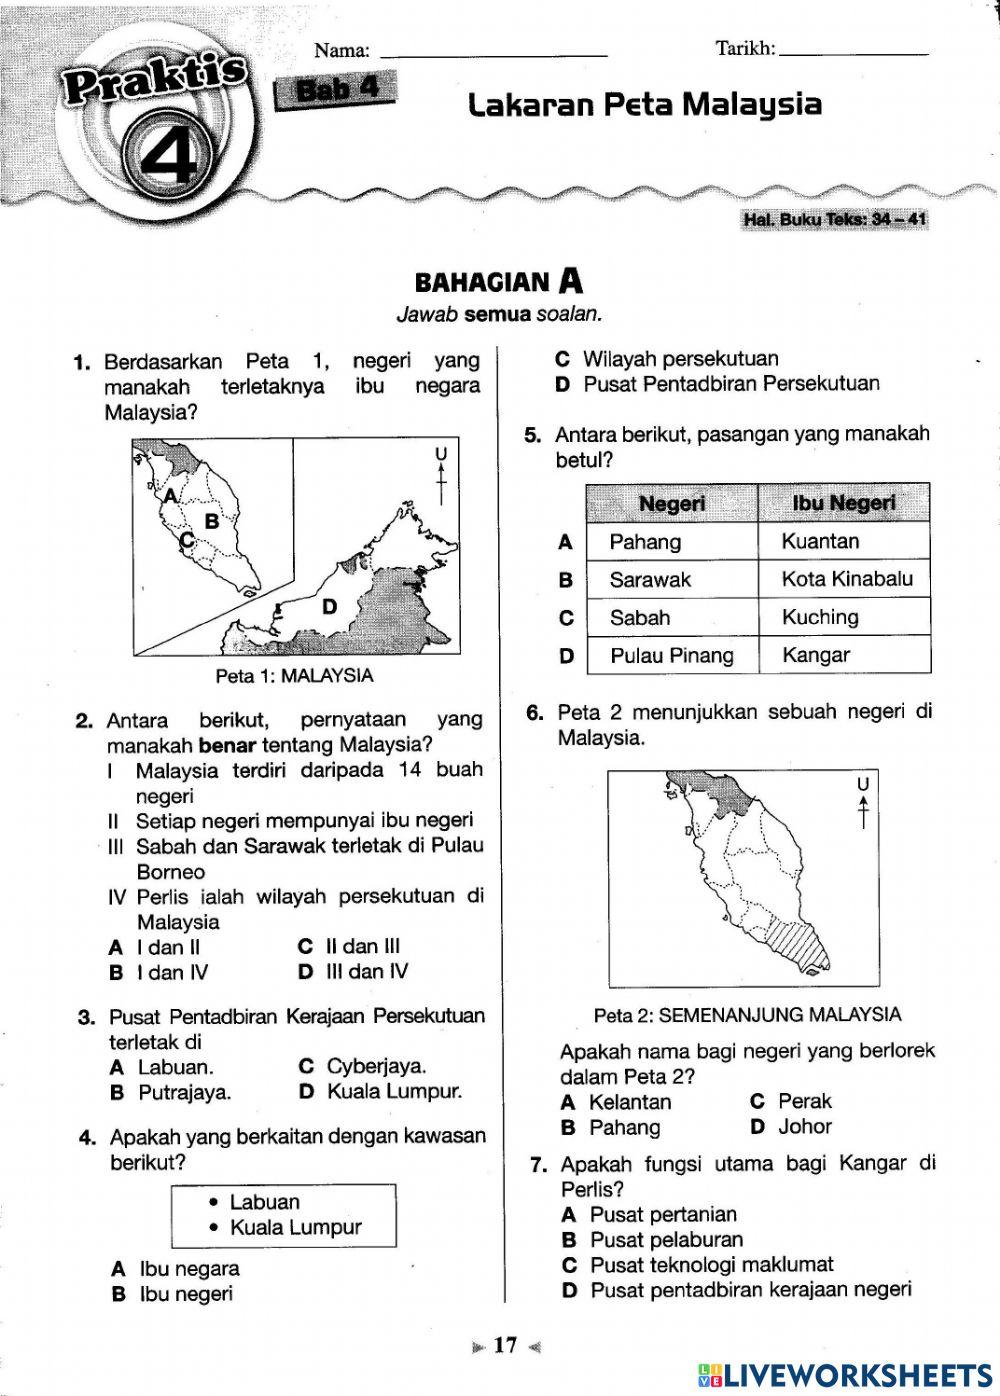 Praktis 4 Lakaran Peta Malaysia